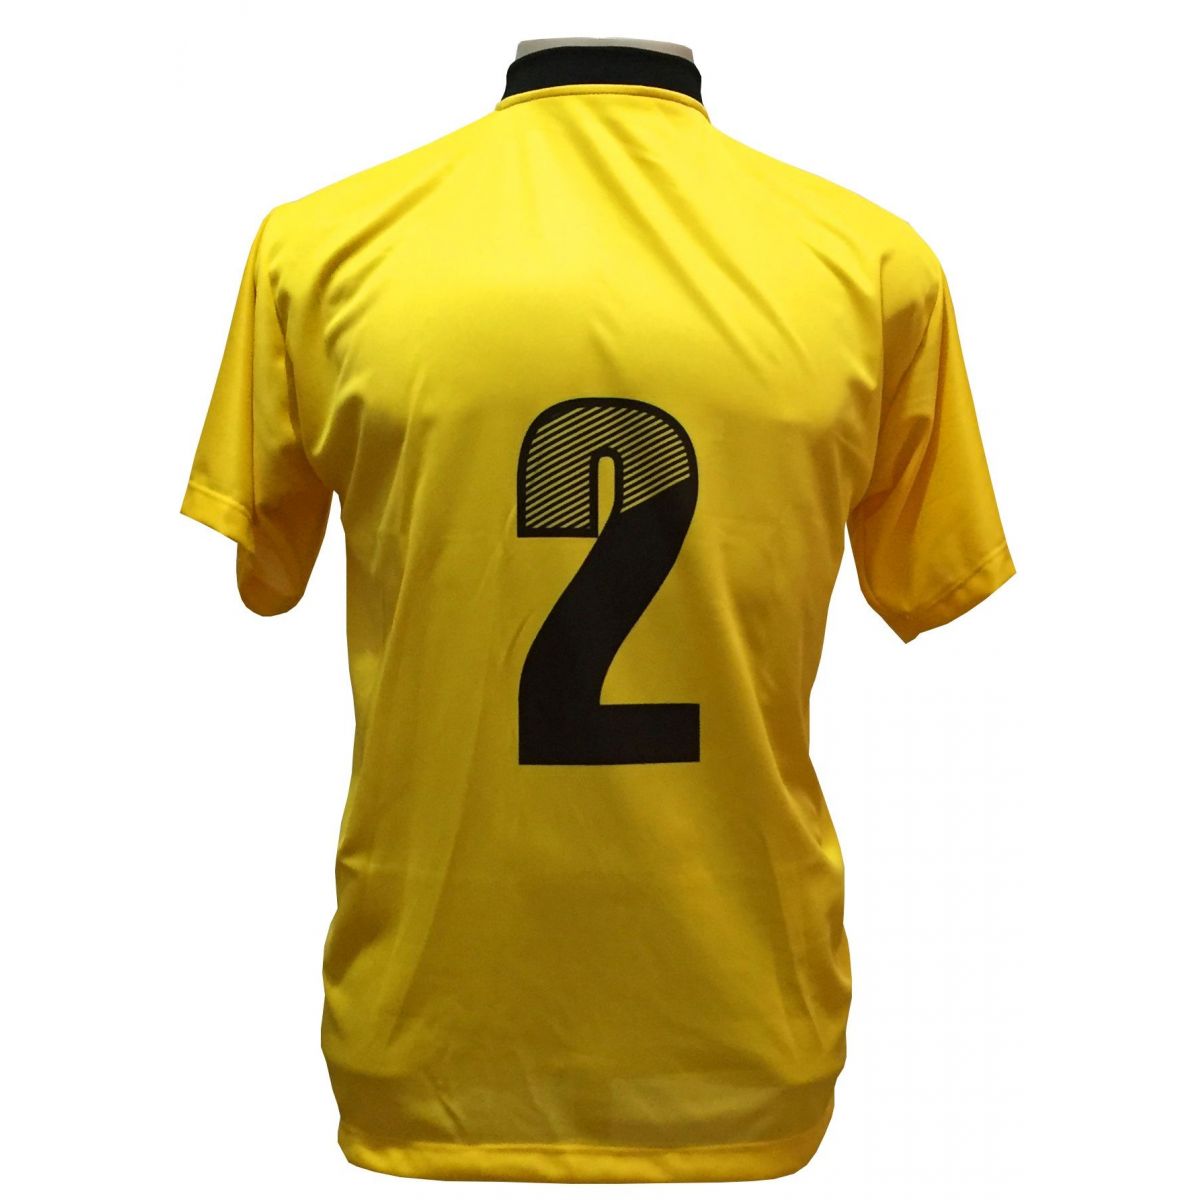 Fardamento Completo modelo Roma 20+2 (20 camisas Amarelo/Preto + 20 calções modelo Copa Preto/Amarelo+ 20 pares de meiões Amarelo + 2 conjuntos de goleiro) + Brindes